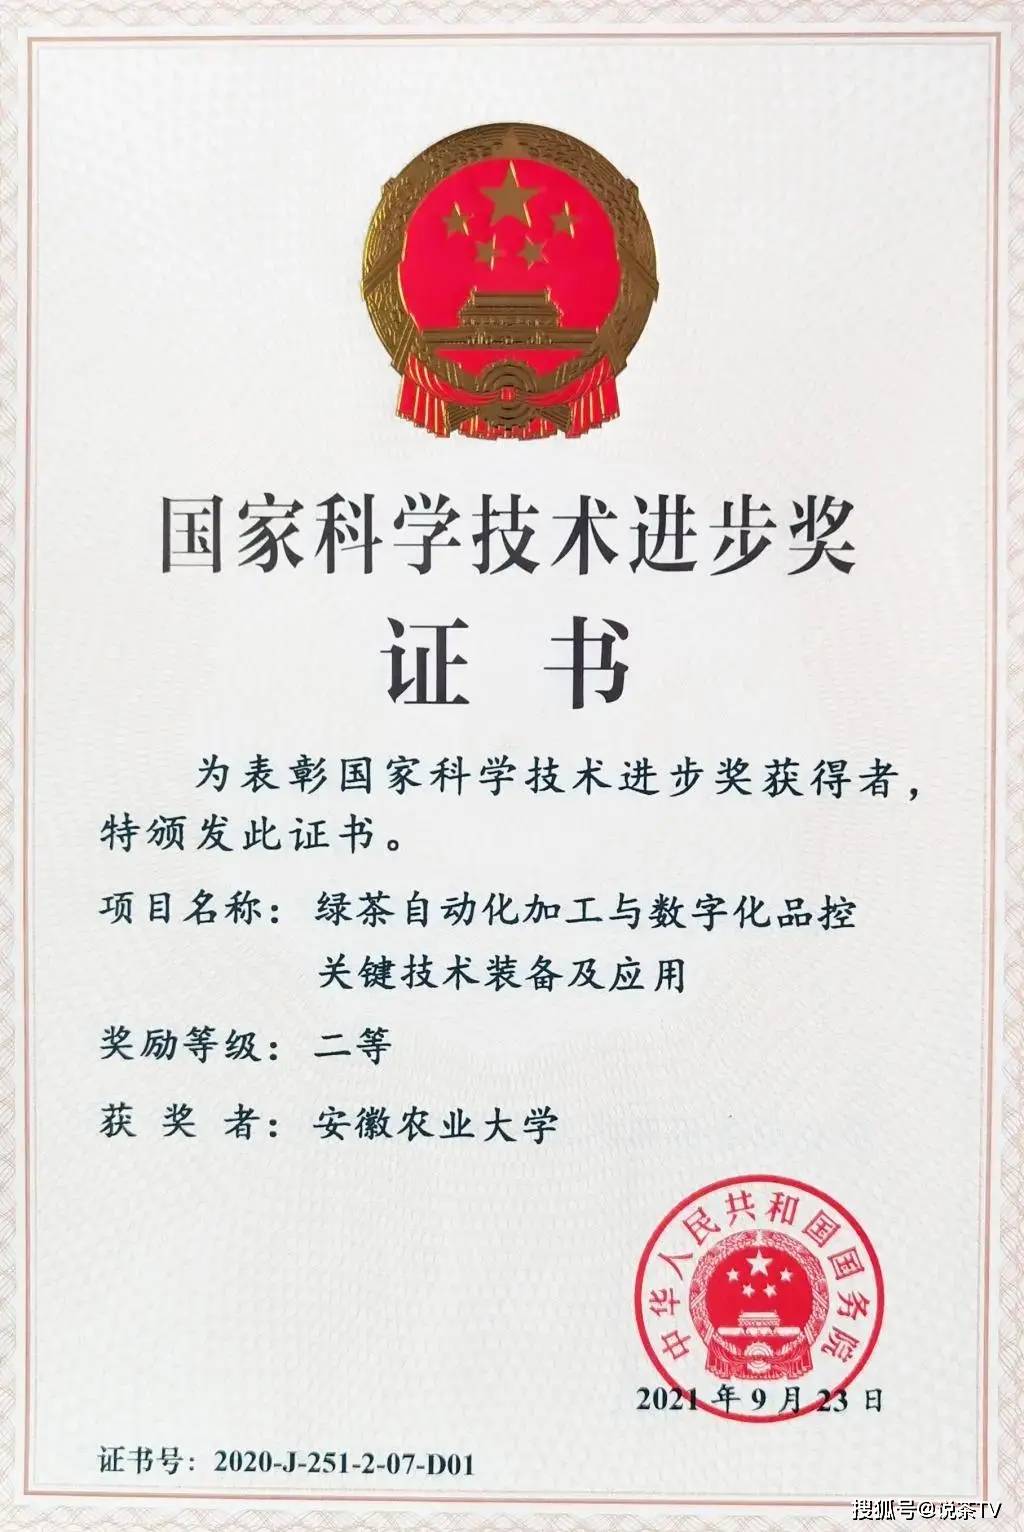 茶科技项目荣获我国科技领域最高奖